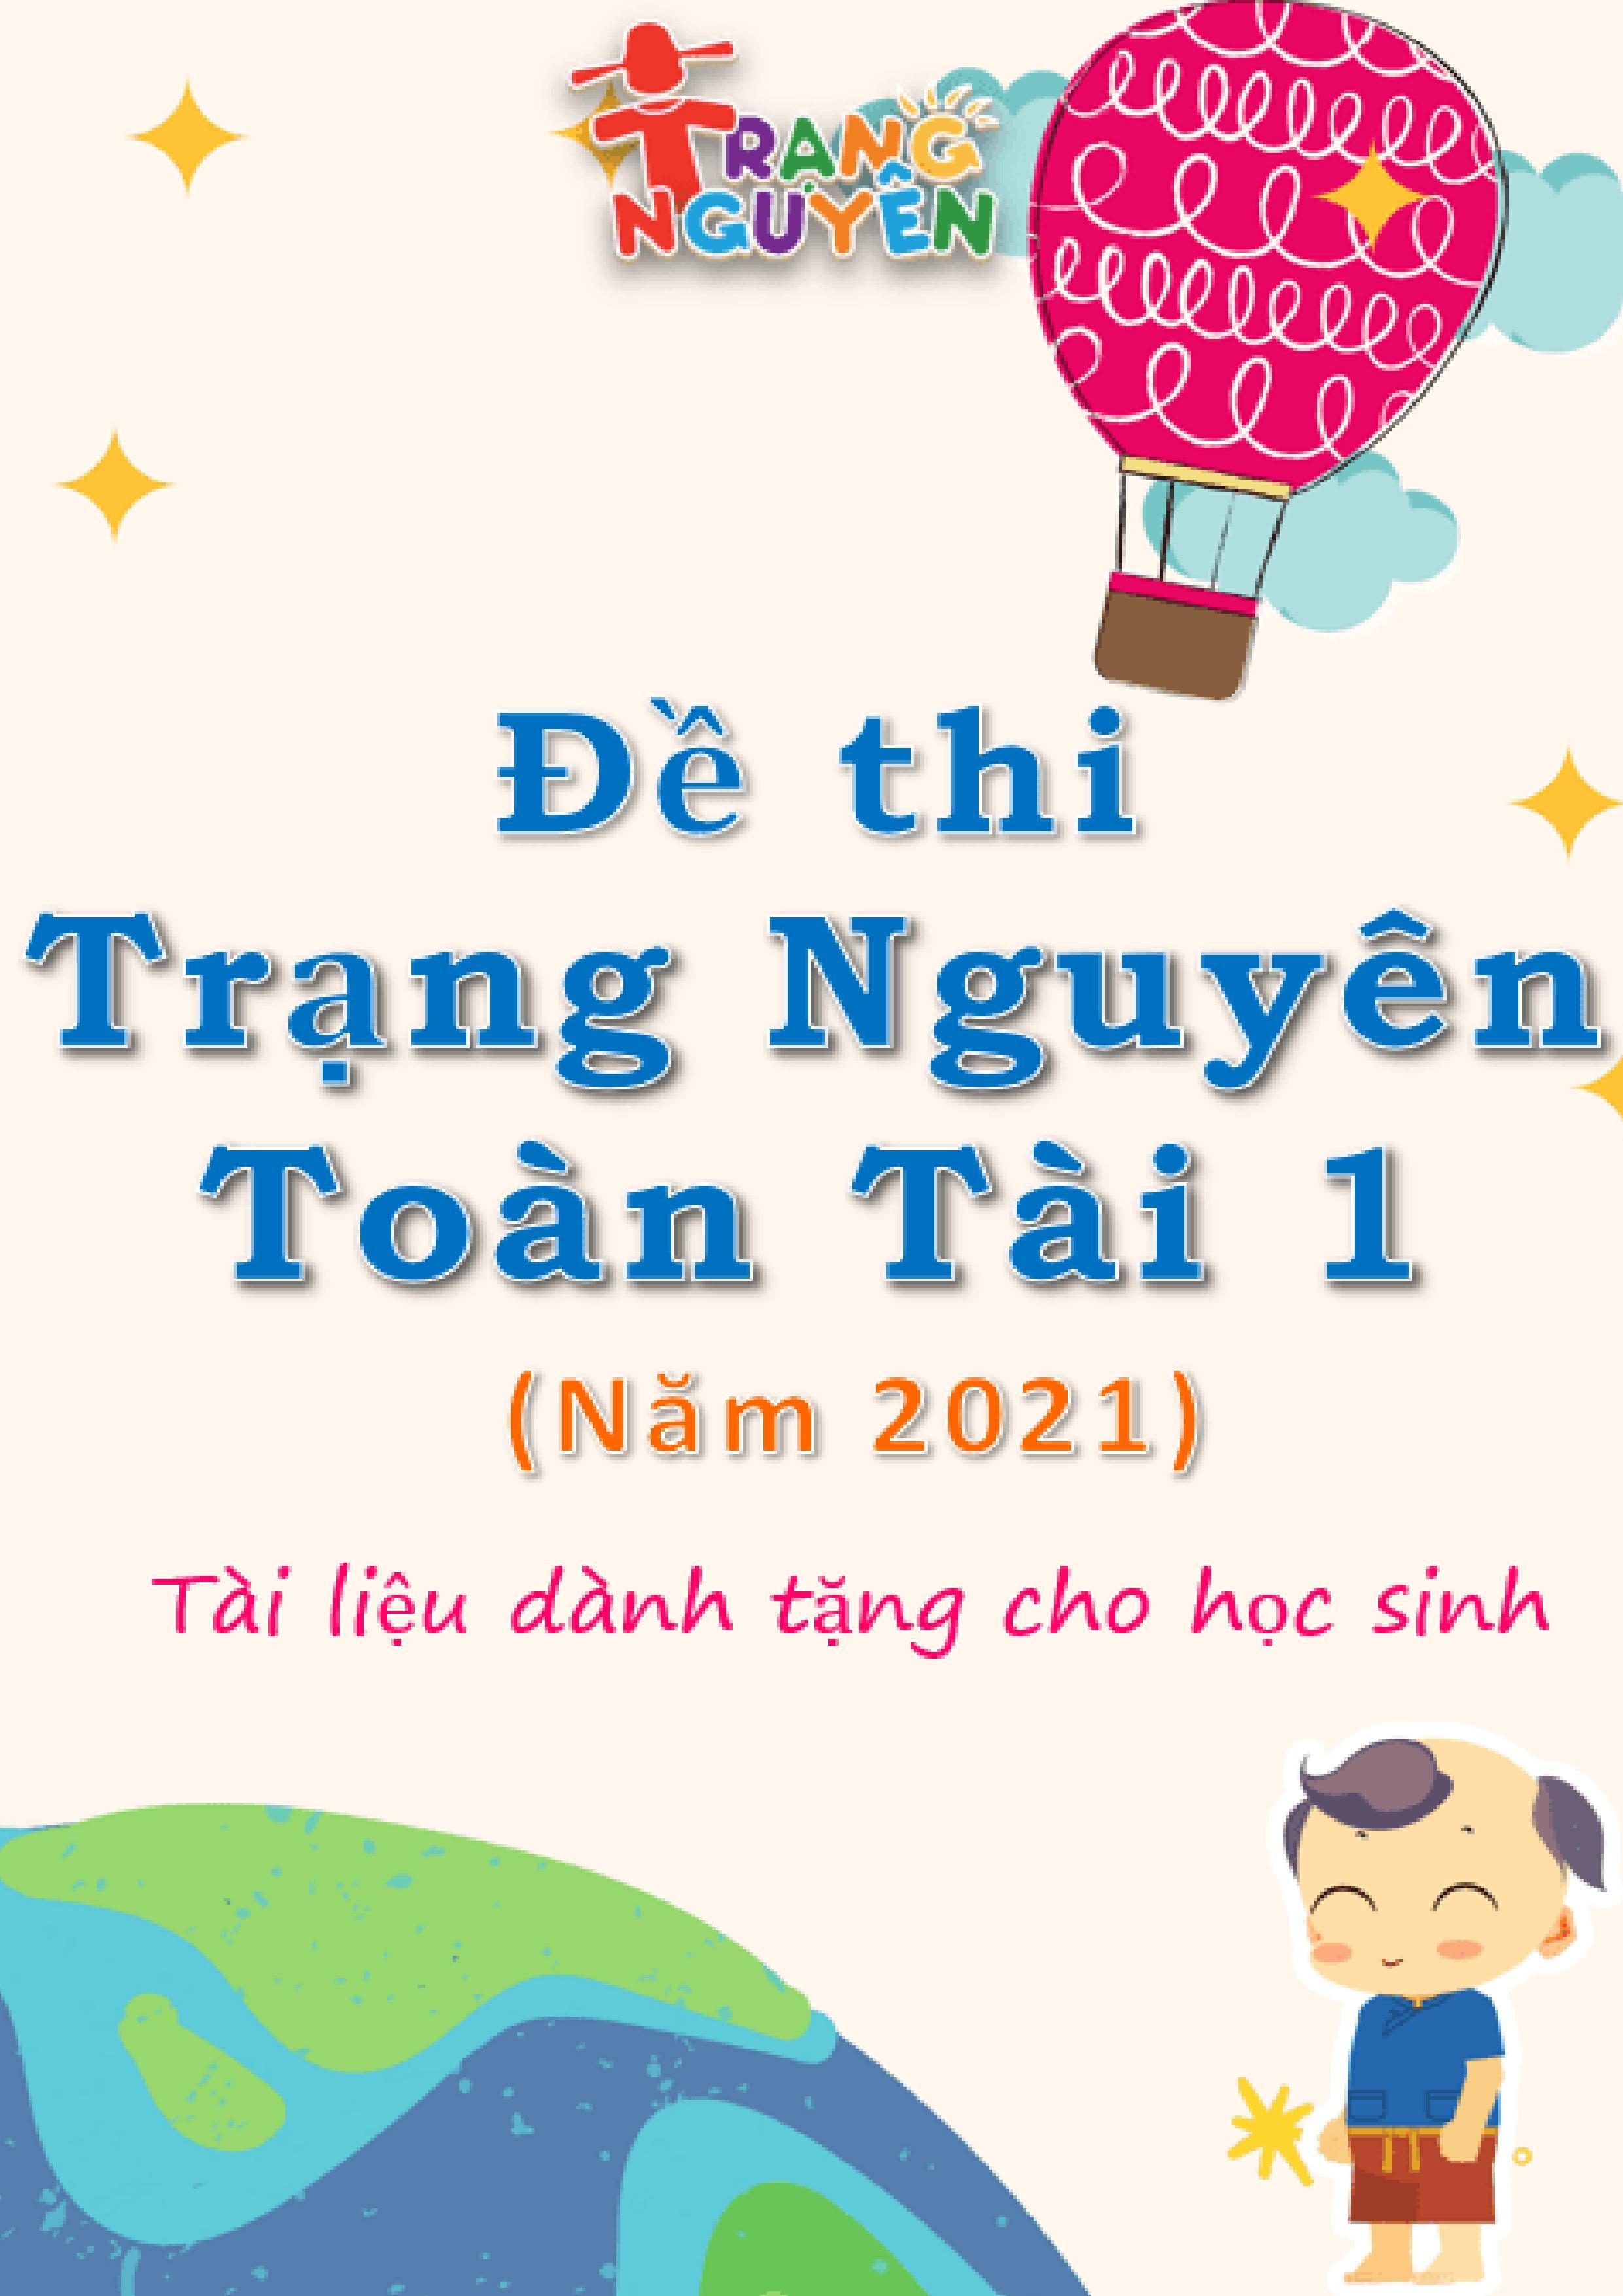 de-thi-trang-nguyen-tieng-viet-lop-2-nam-hoc-2020-2021